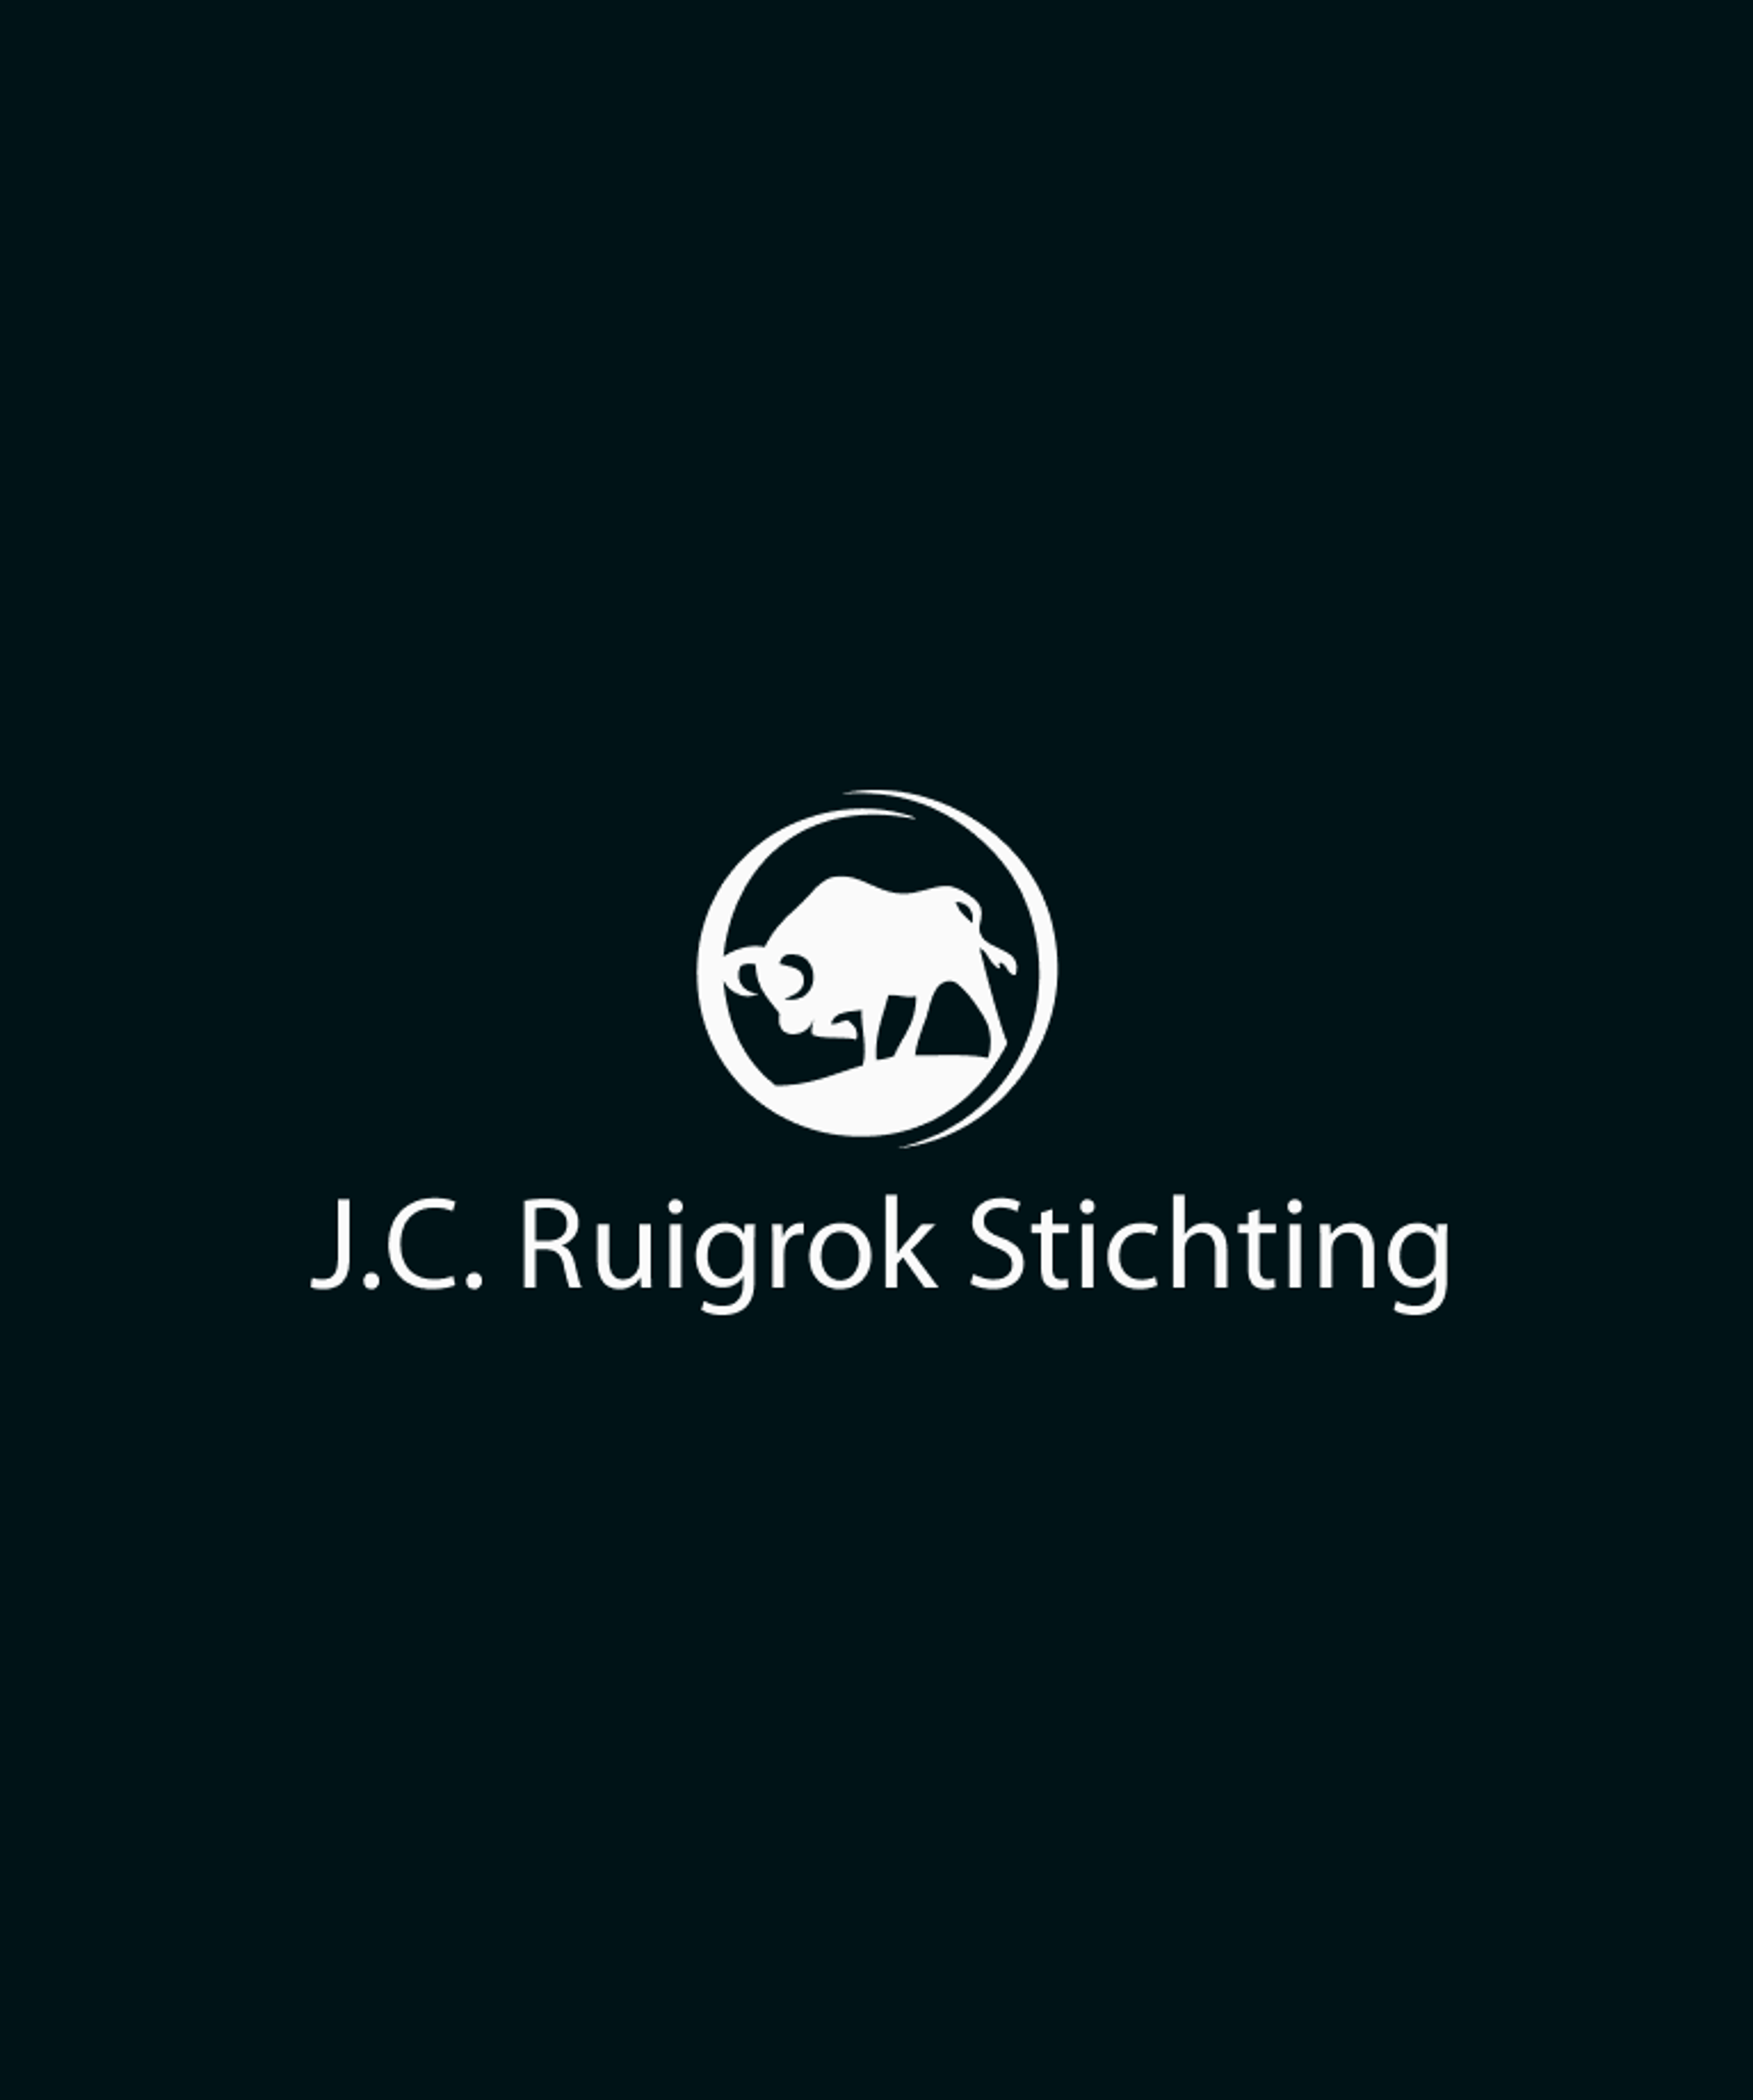 JC Ruigrok Stichting logo